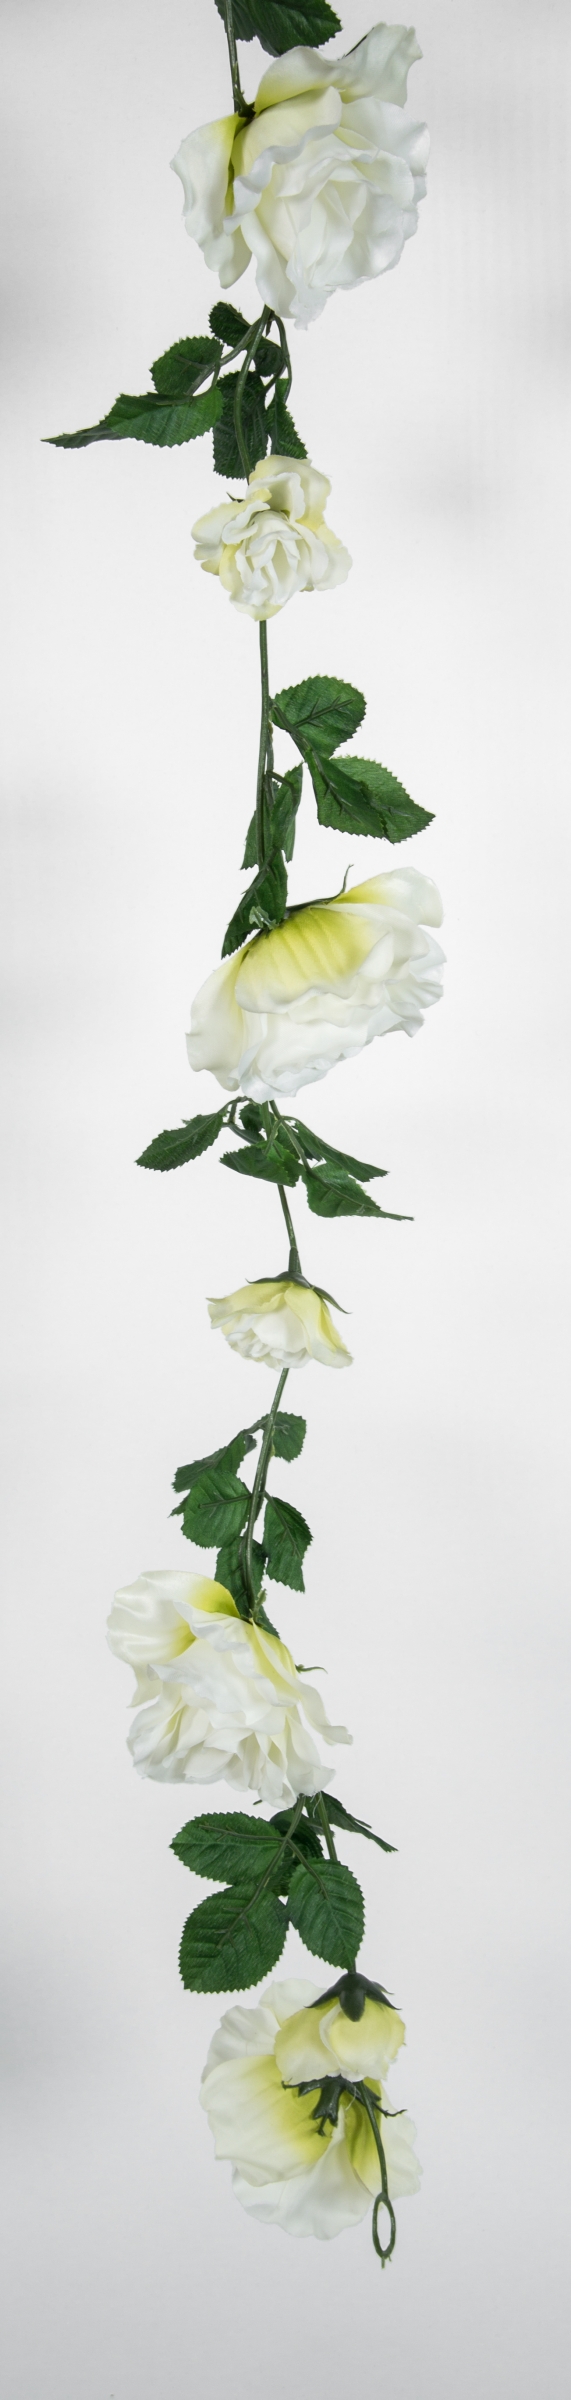 Rosengirlande 180cm weiß mit 13 Blüten GA Seidenblumen Kunstblumen  künstliche Girlande Rosen